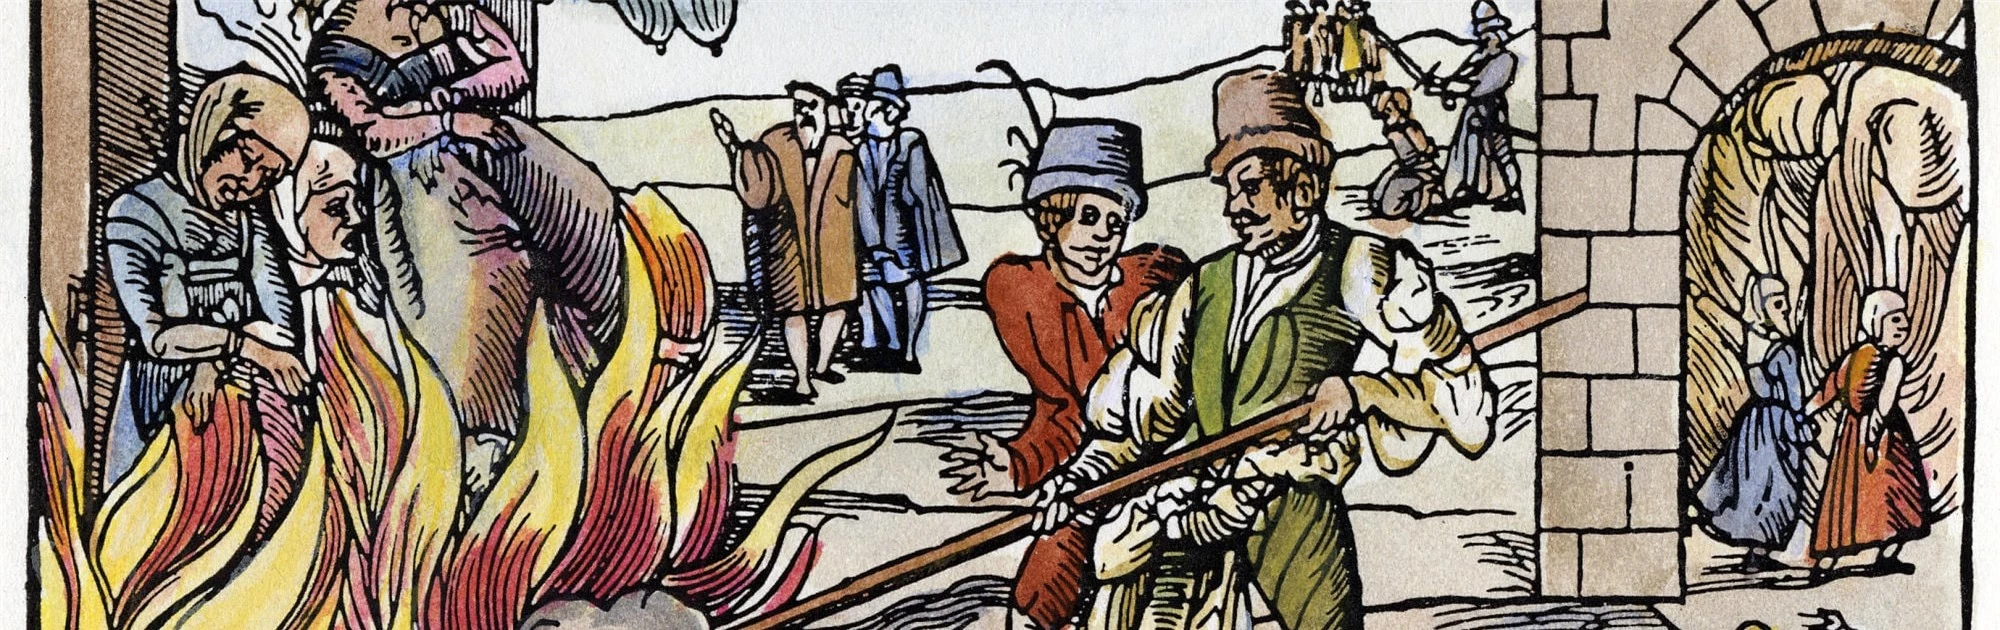 Hỏa thiêu phù thủy ở Derenburg, 1555. Nguồn: Spektrum.